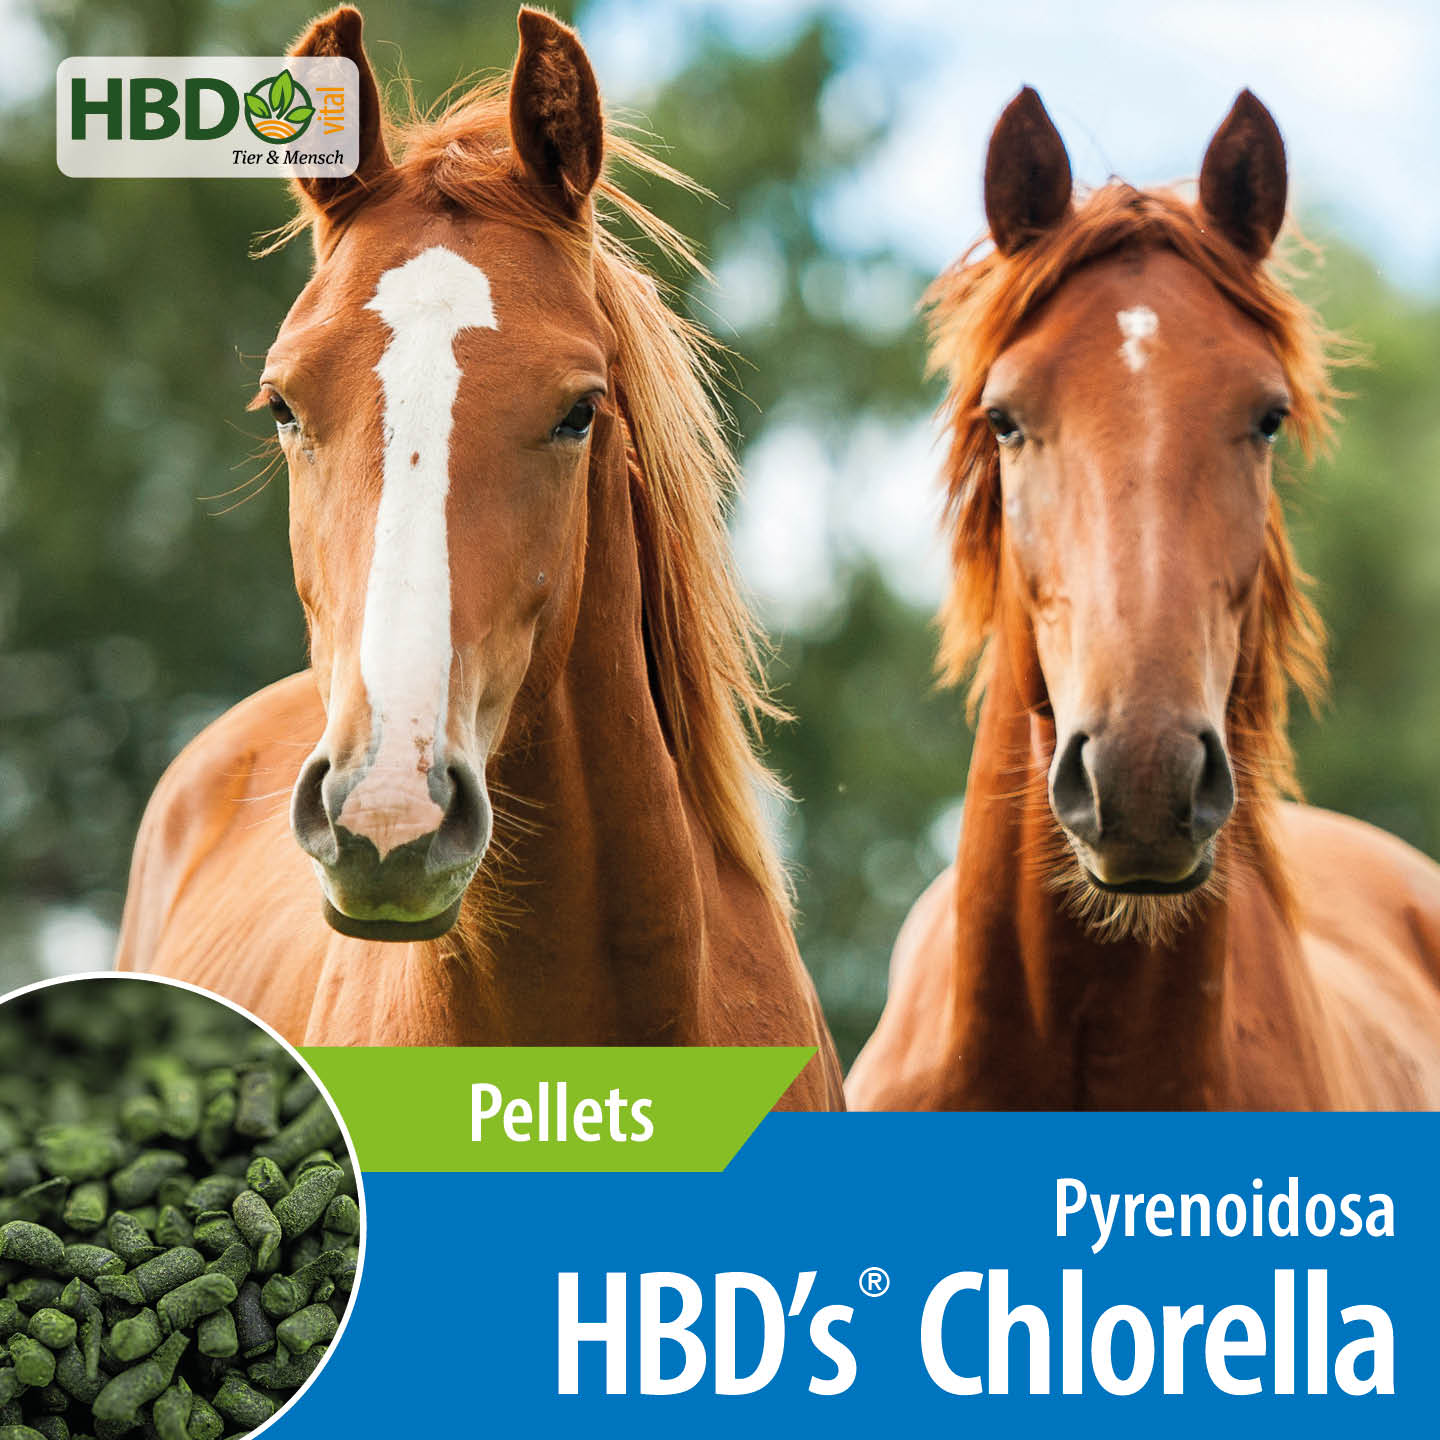 Shopbild für HBD's Chlorella Pferdefutter - Das Bild zeigt den Produktnamen sowie den Hinweis, dass es sich um Pellets handelt. Zwei hellbraune Pferdeköpfe schauen frontal in die Kamera.